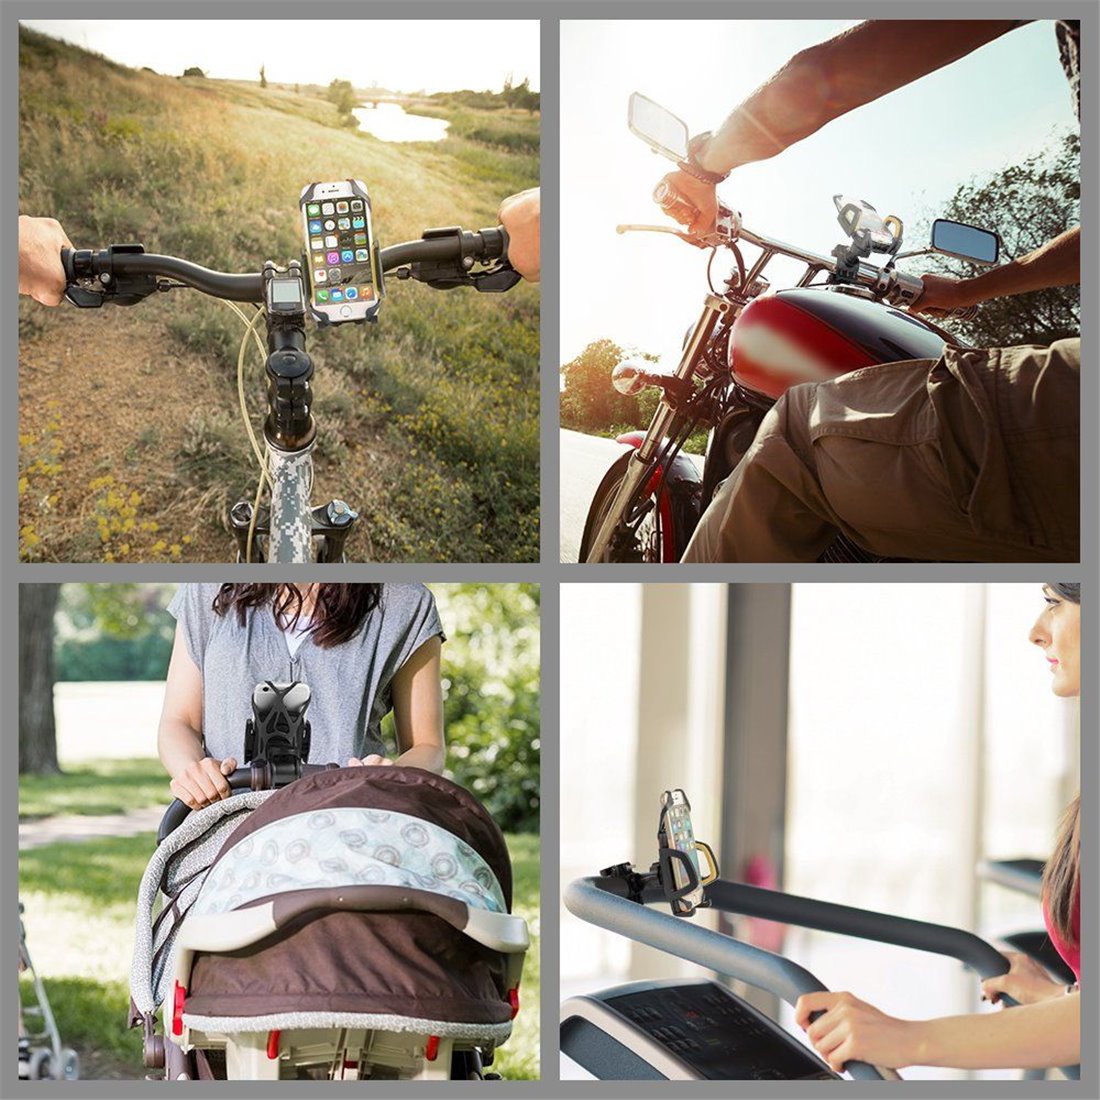 Support téléphone de bicyclette Novete SpiderM Support de téléphone portable pour vélo et moto, compatible avec les téléphone